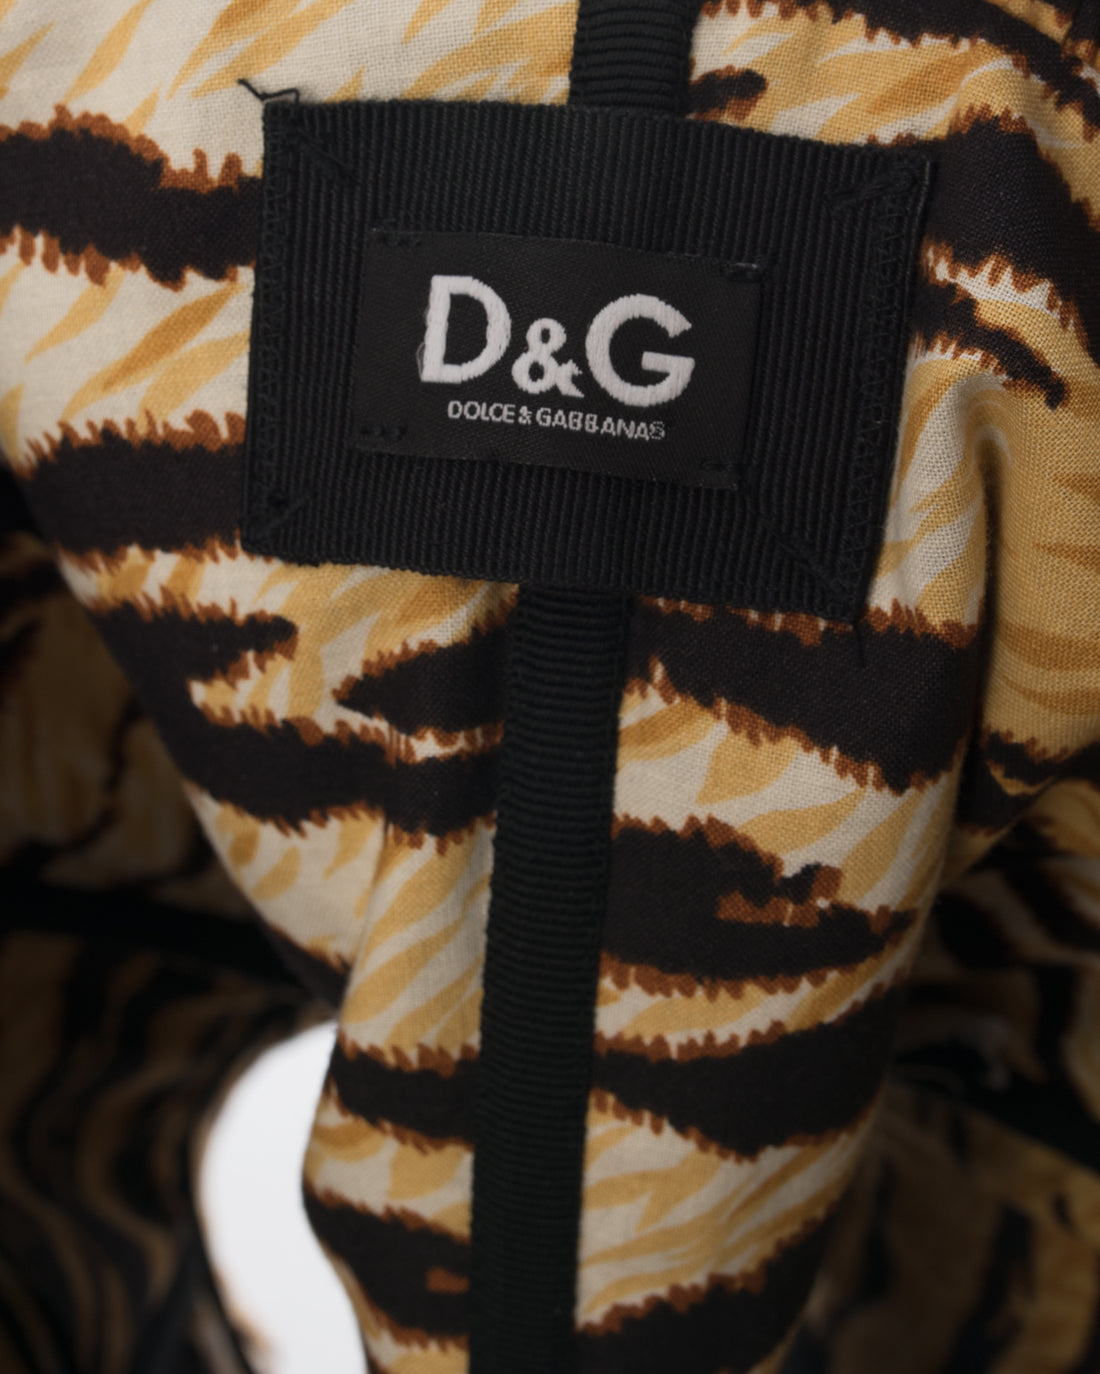 D&G Dolce Gabbana Yellow Leopard Corset Top - 2